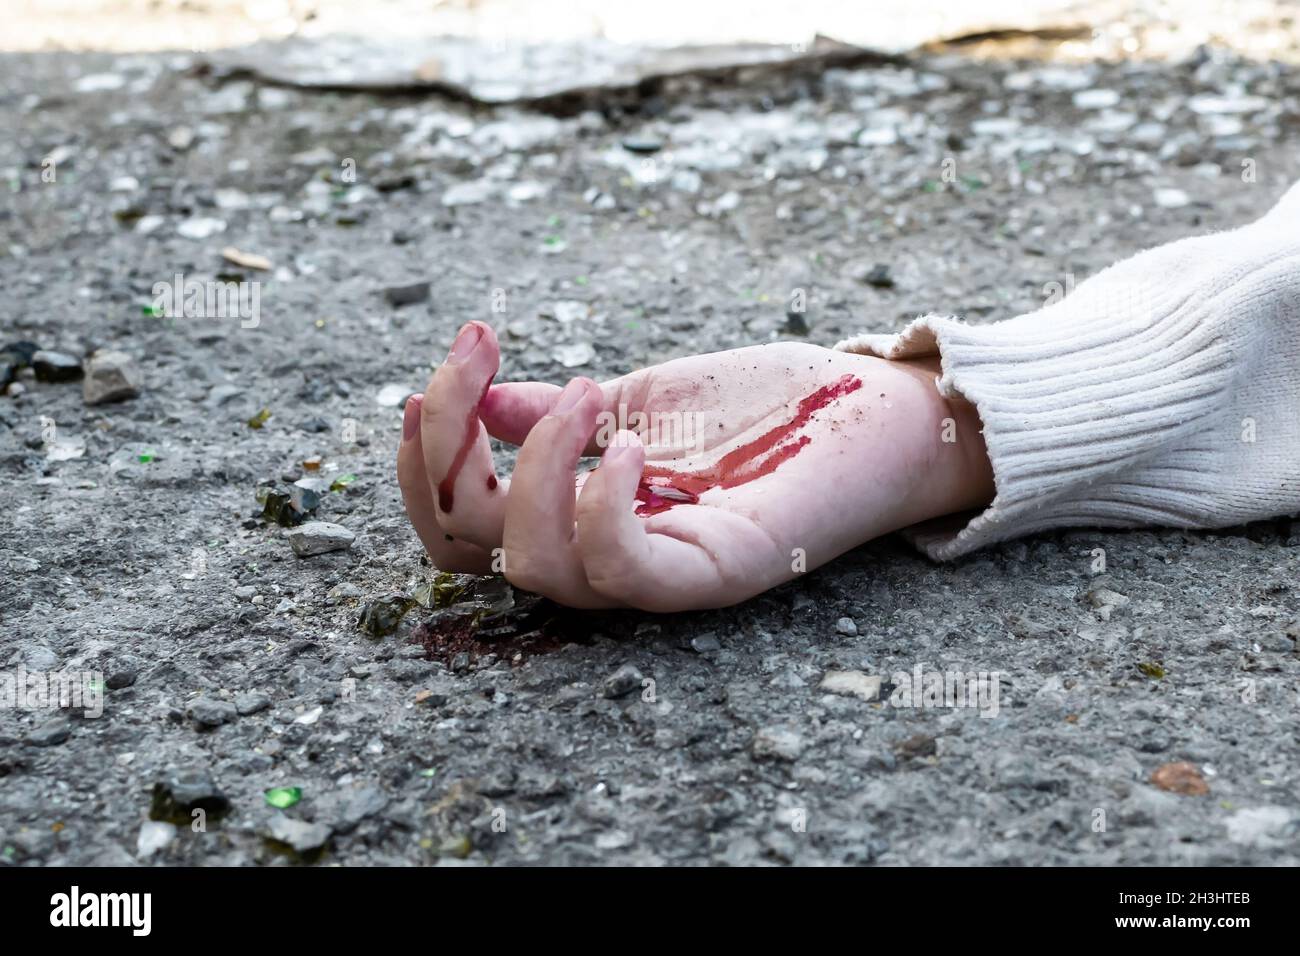 la mano de un hombre en sangre se encuentra en el asfalto de la carretera después de un accidente automovilístico. Foto de stock